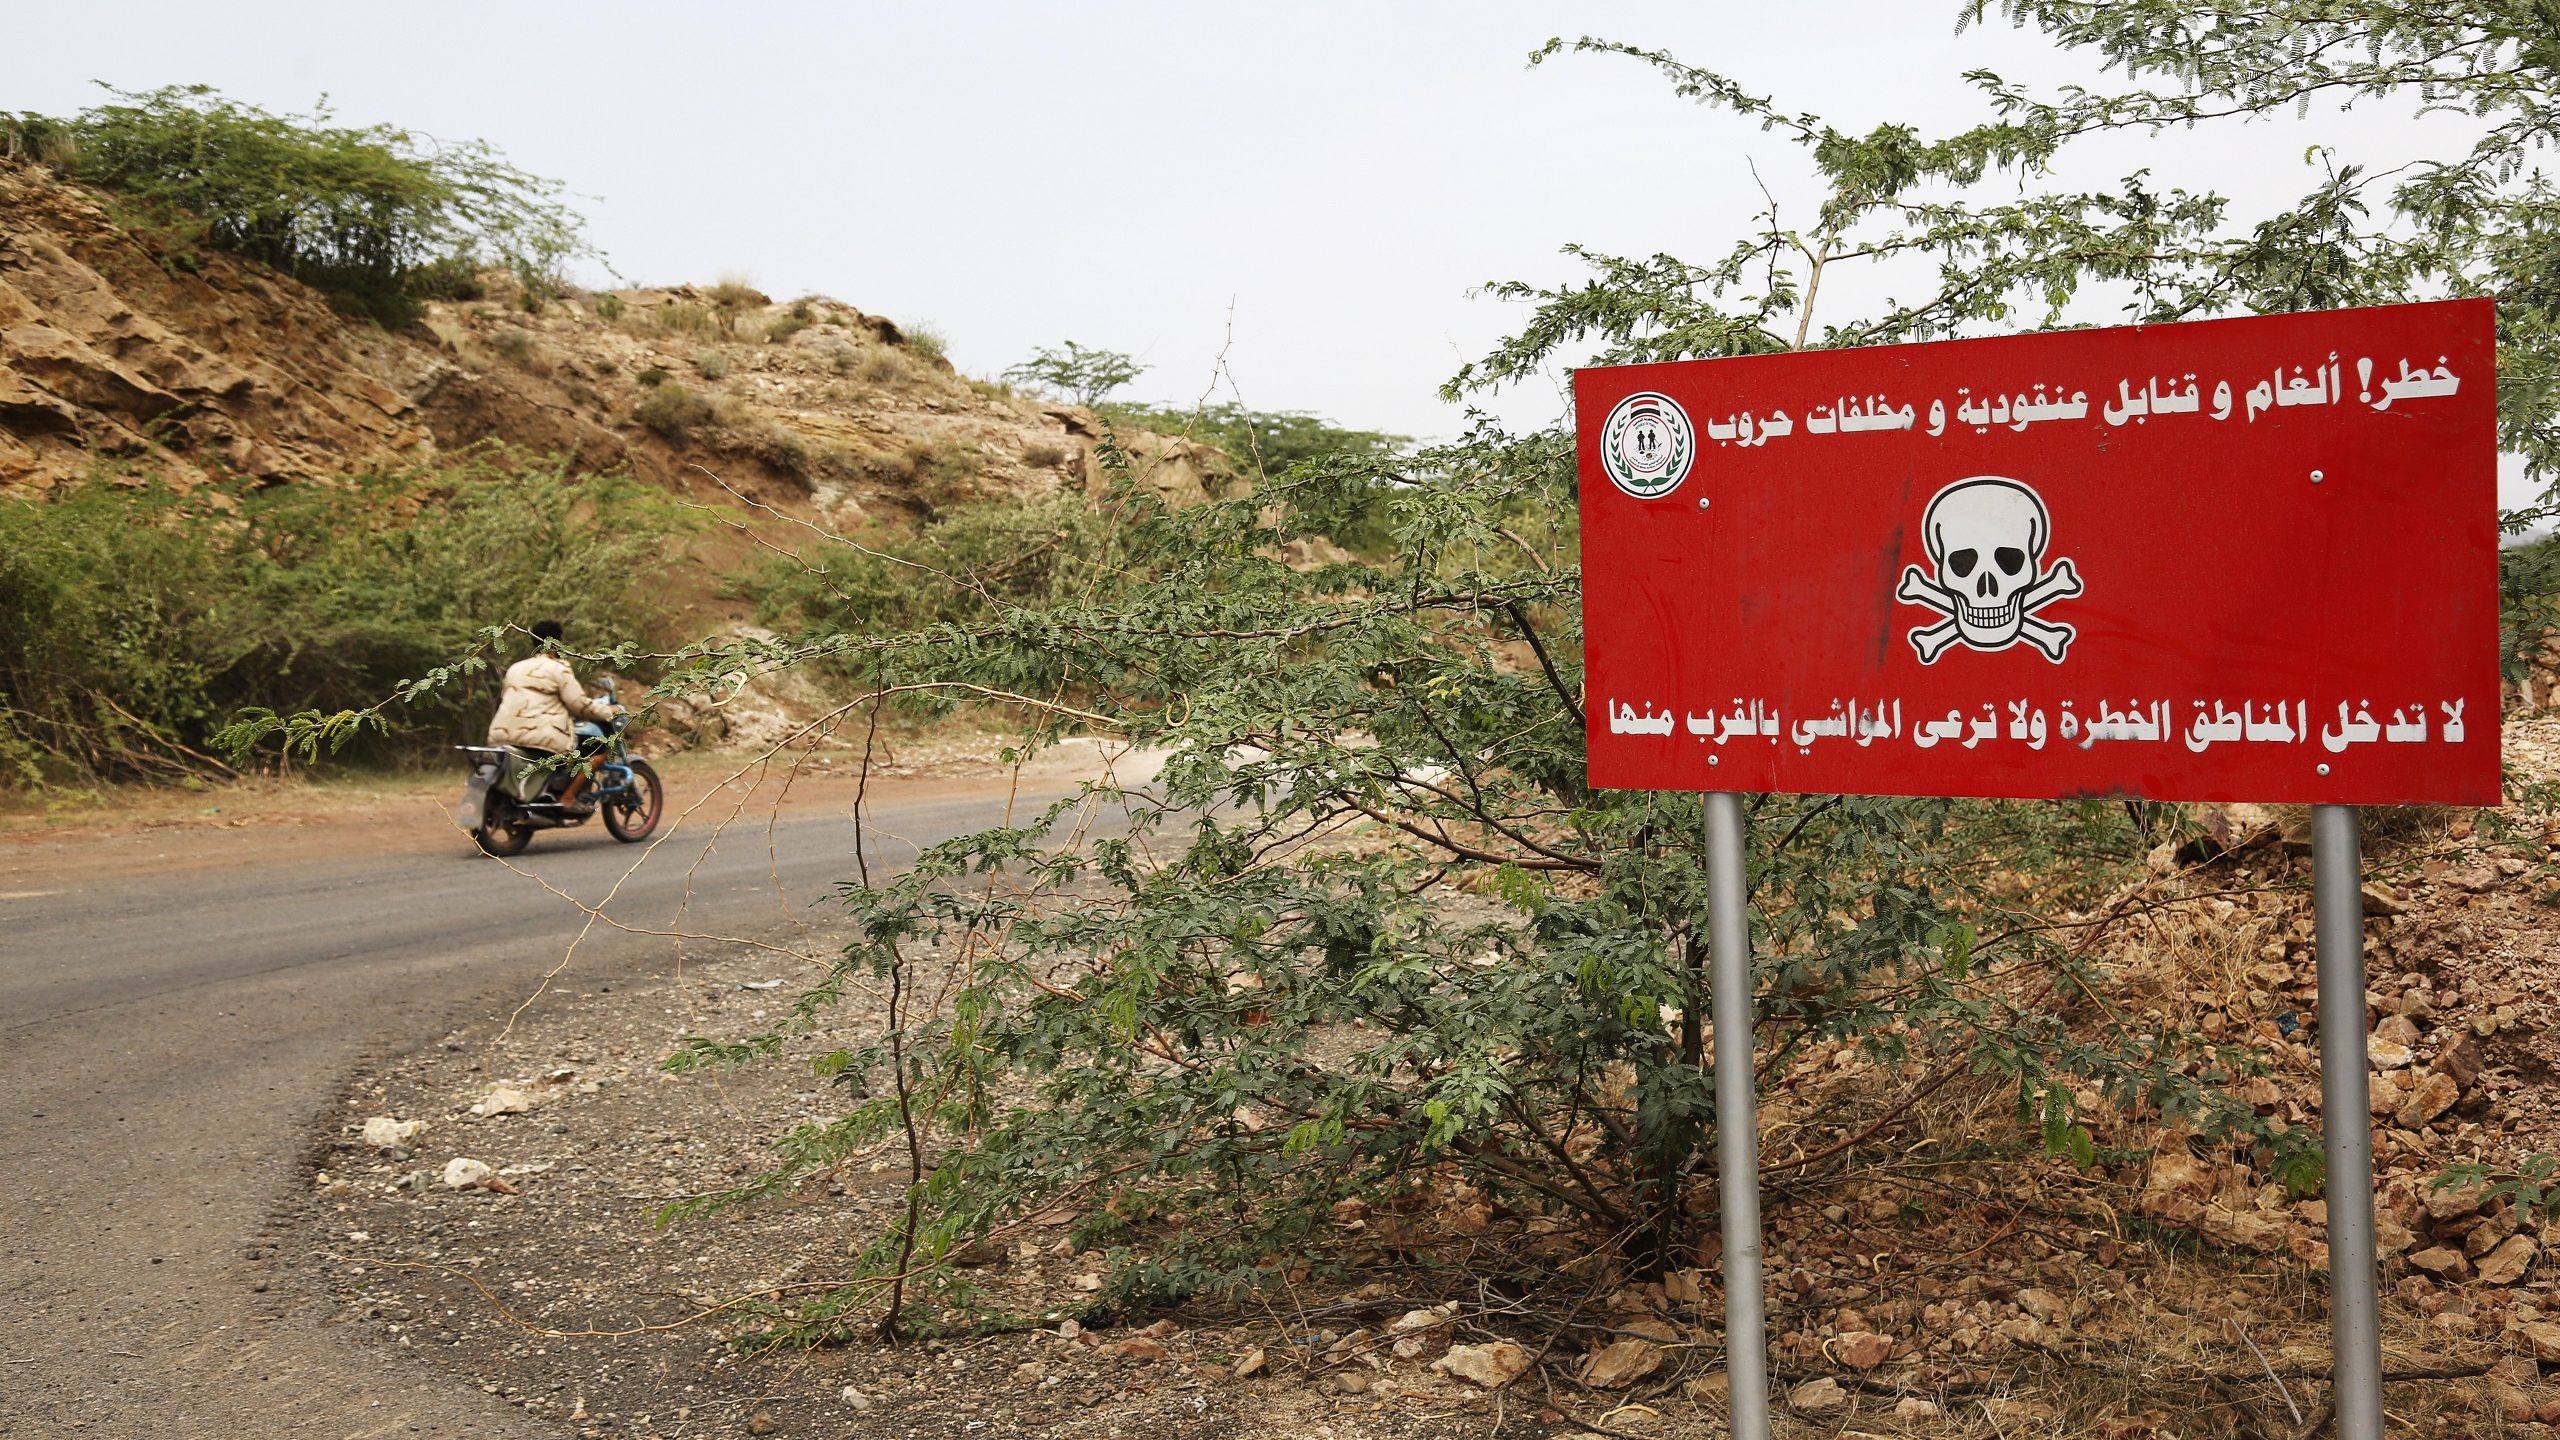 7 Ethiopian Migrants Injured by Landmine in Northern Yemen